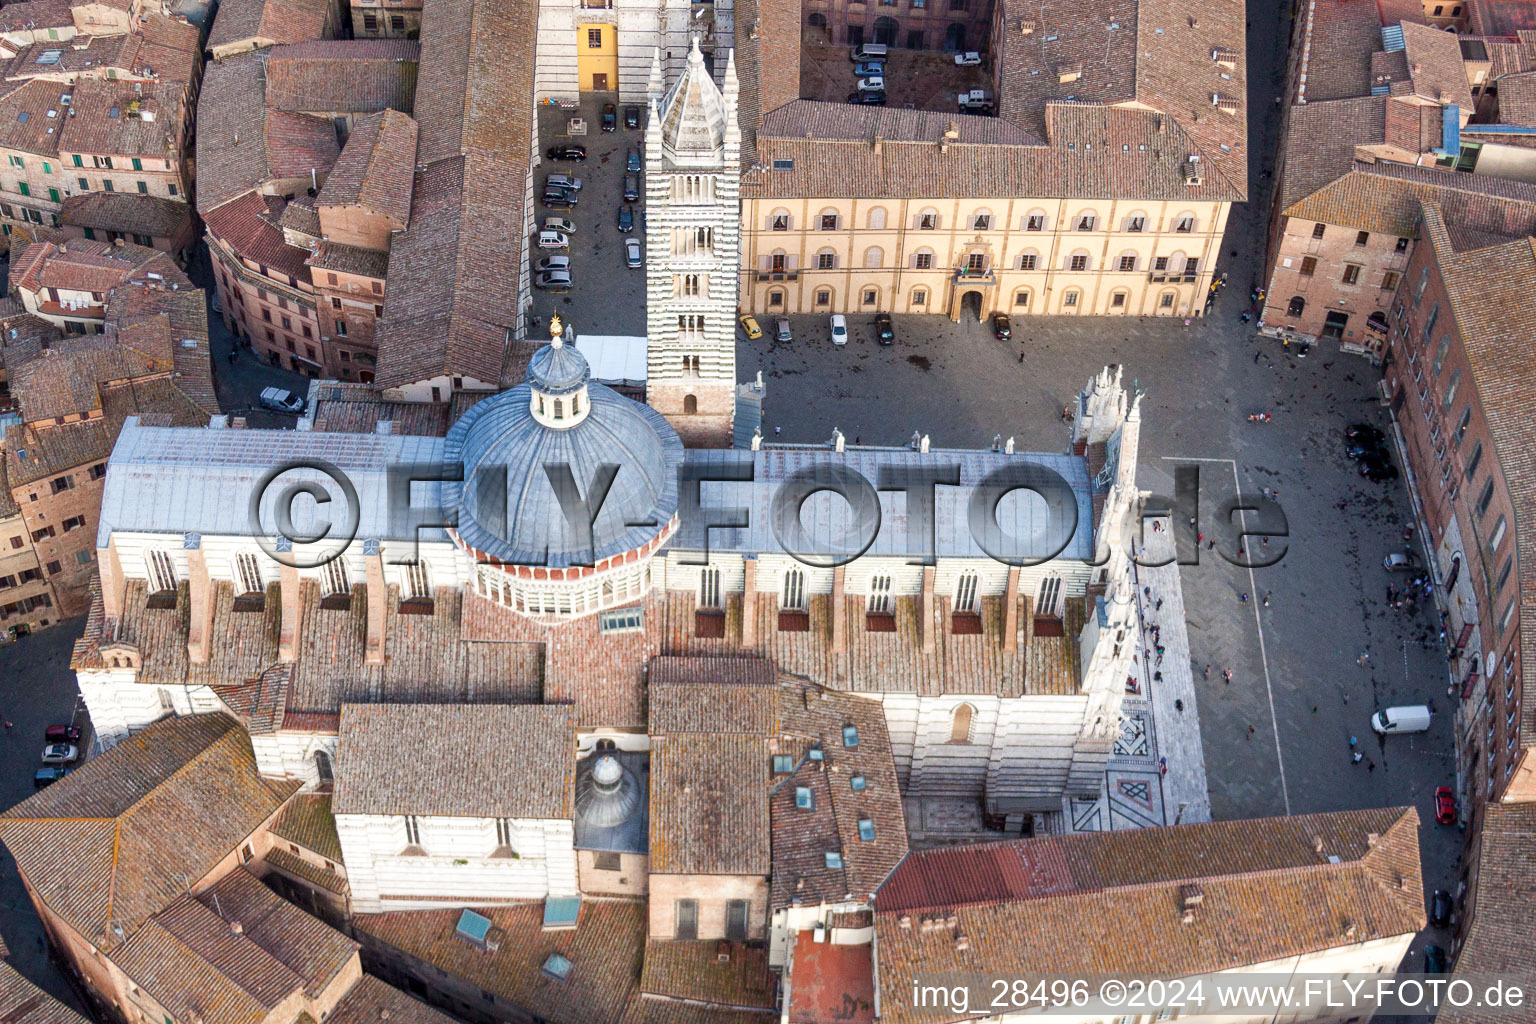 Kirchengebäude des Domes Kathedrale von Siena / Duomo di Siena in Siena in Toskana im Bundesland Toscana, Italien